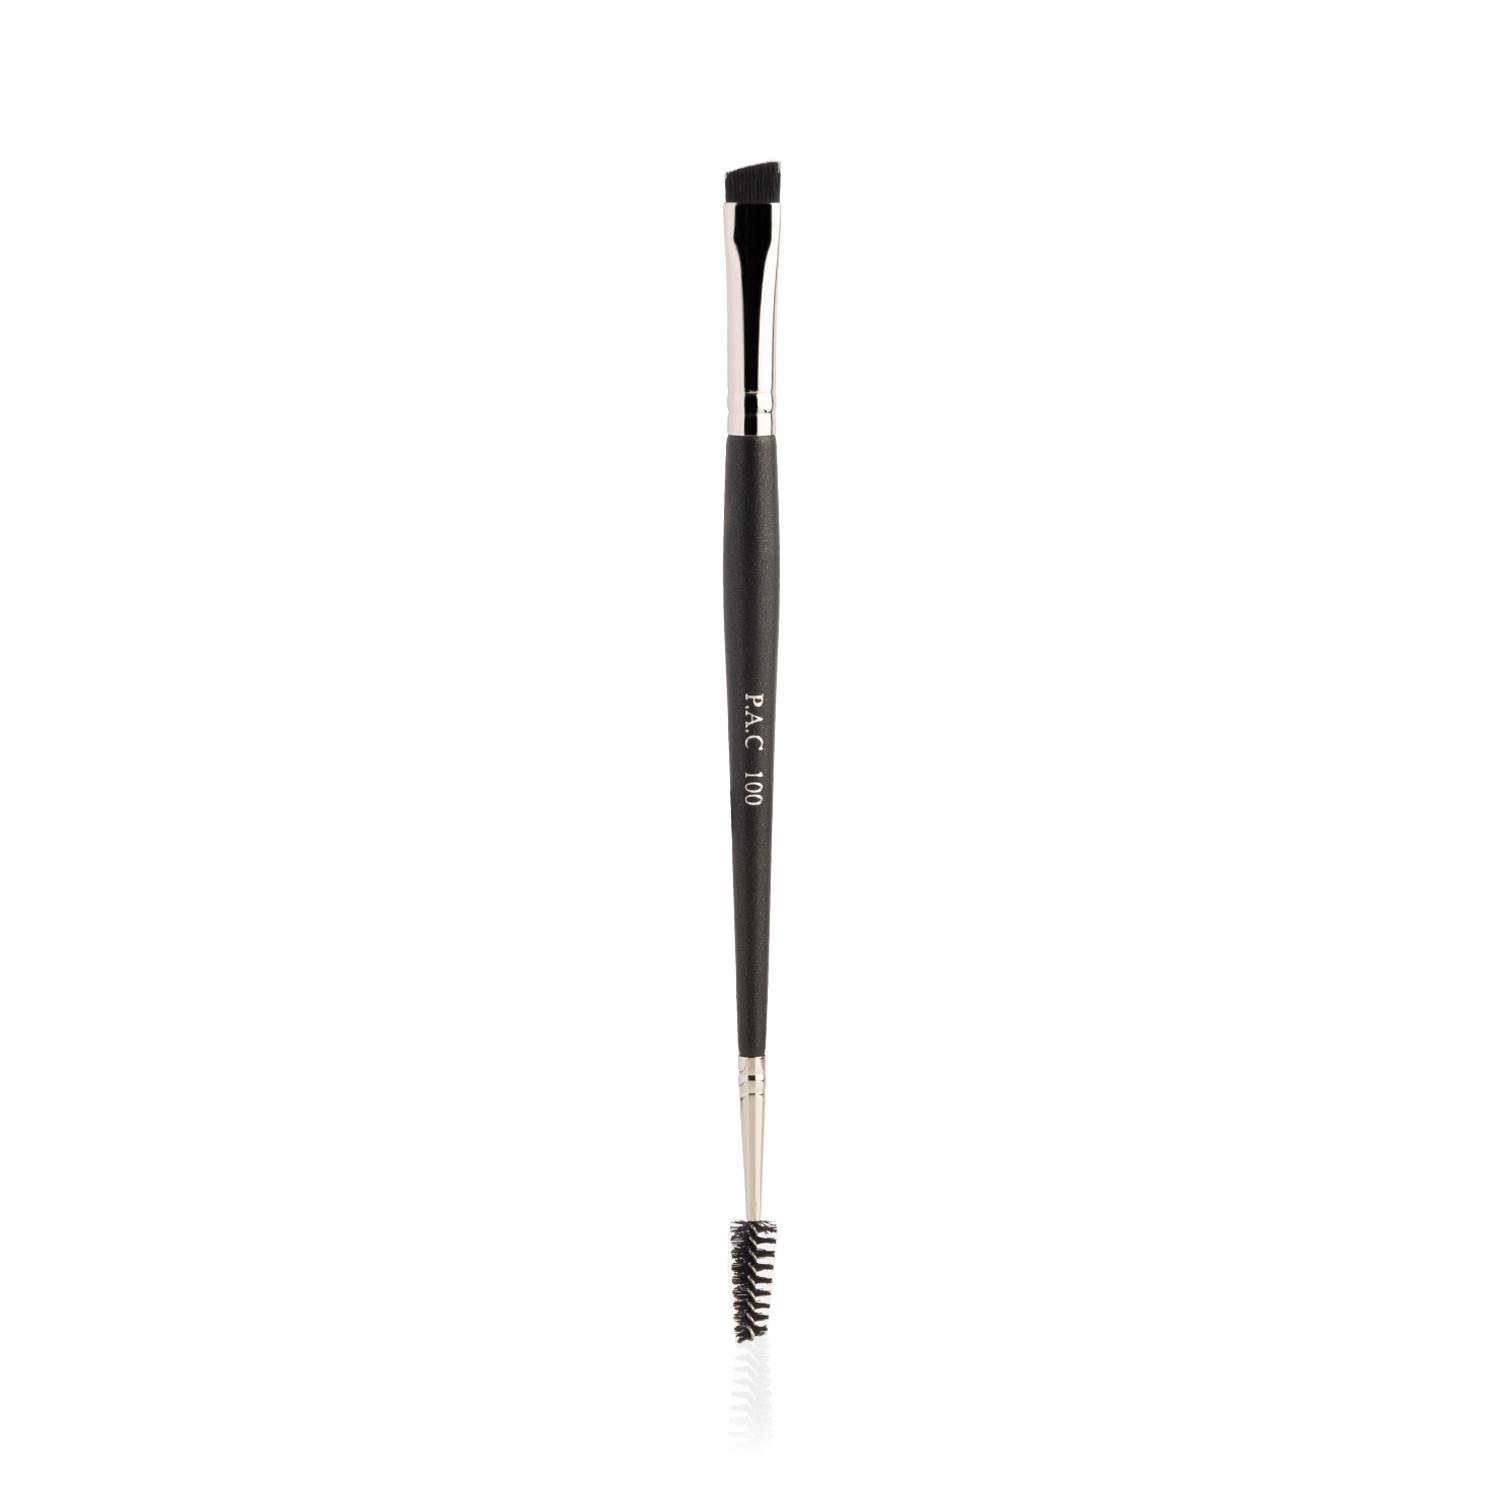 PAC | PAC Eyebrow Brush - 100 (1Pc)